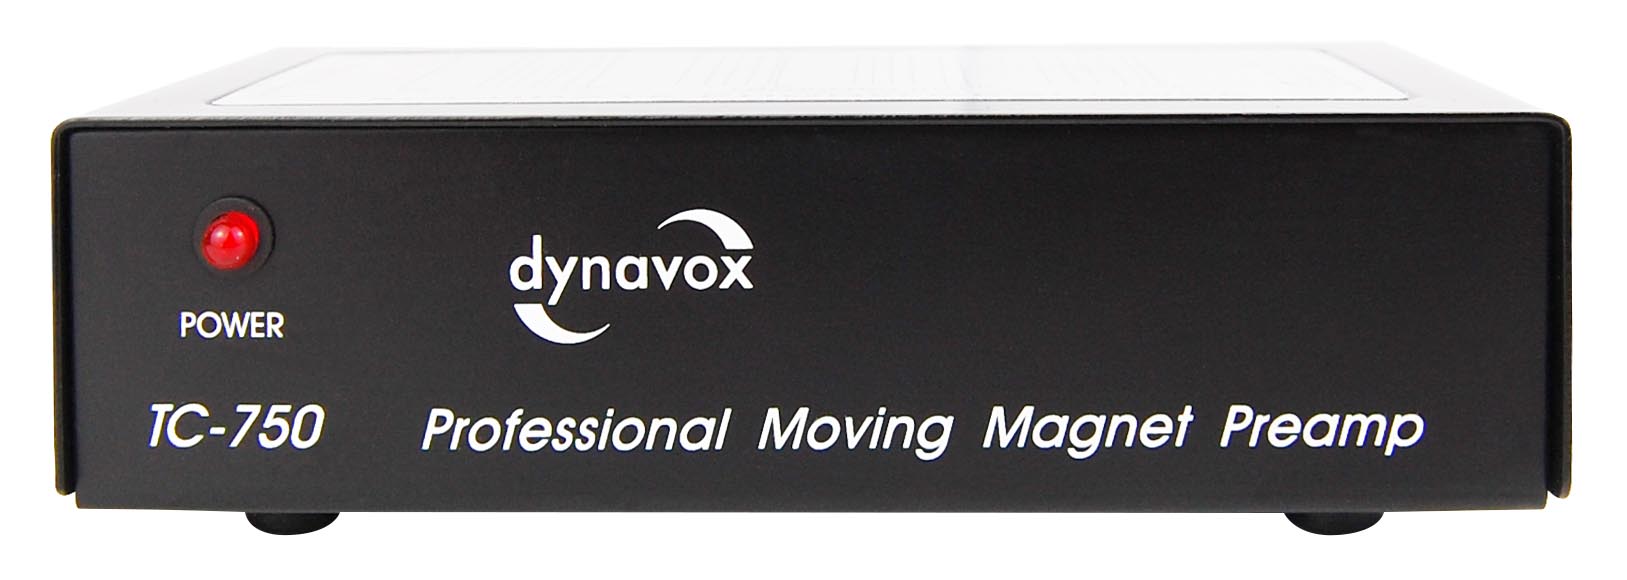 Einfach aber gut. Der Dynavox TC-750 mit ausgelagertem Netzteil passt in jedes Regal.